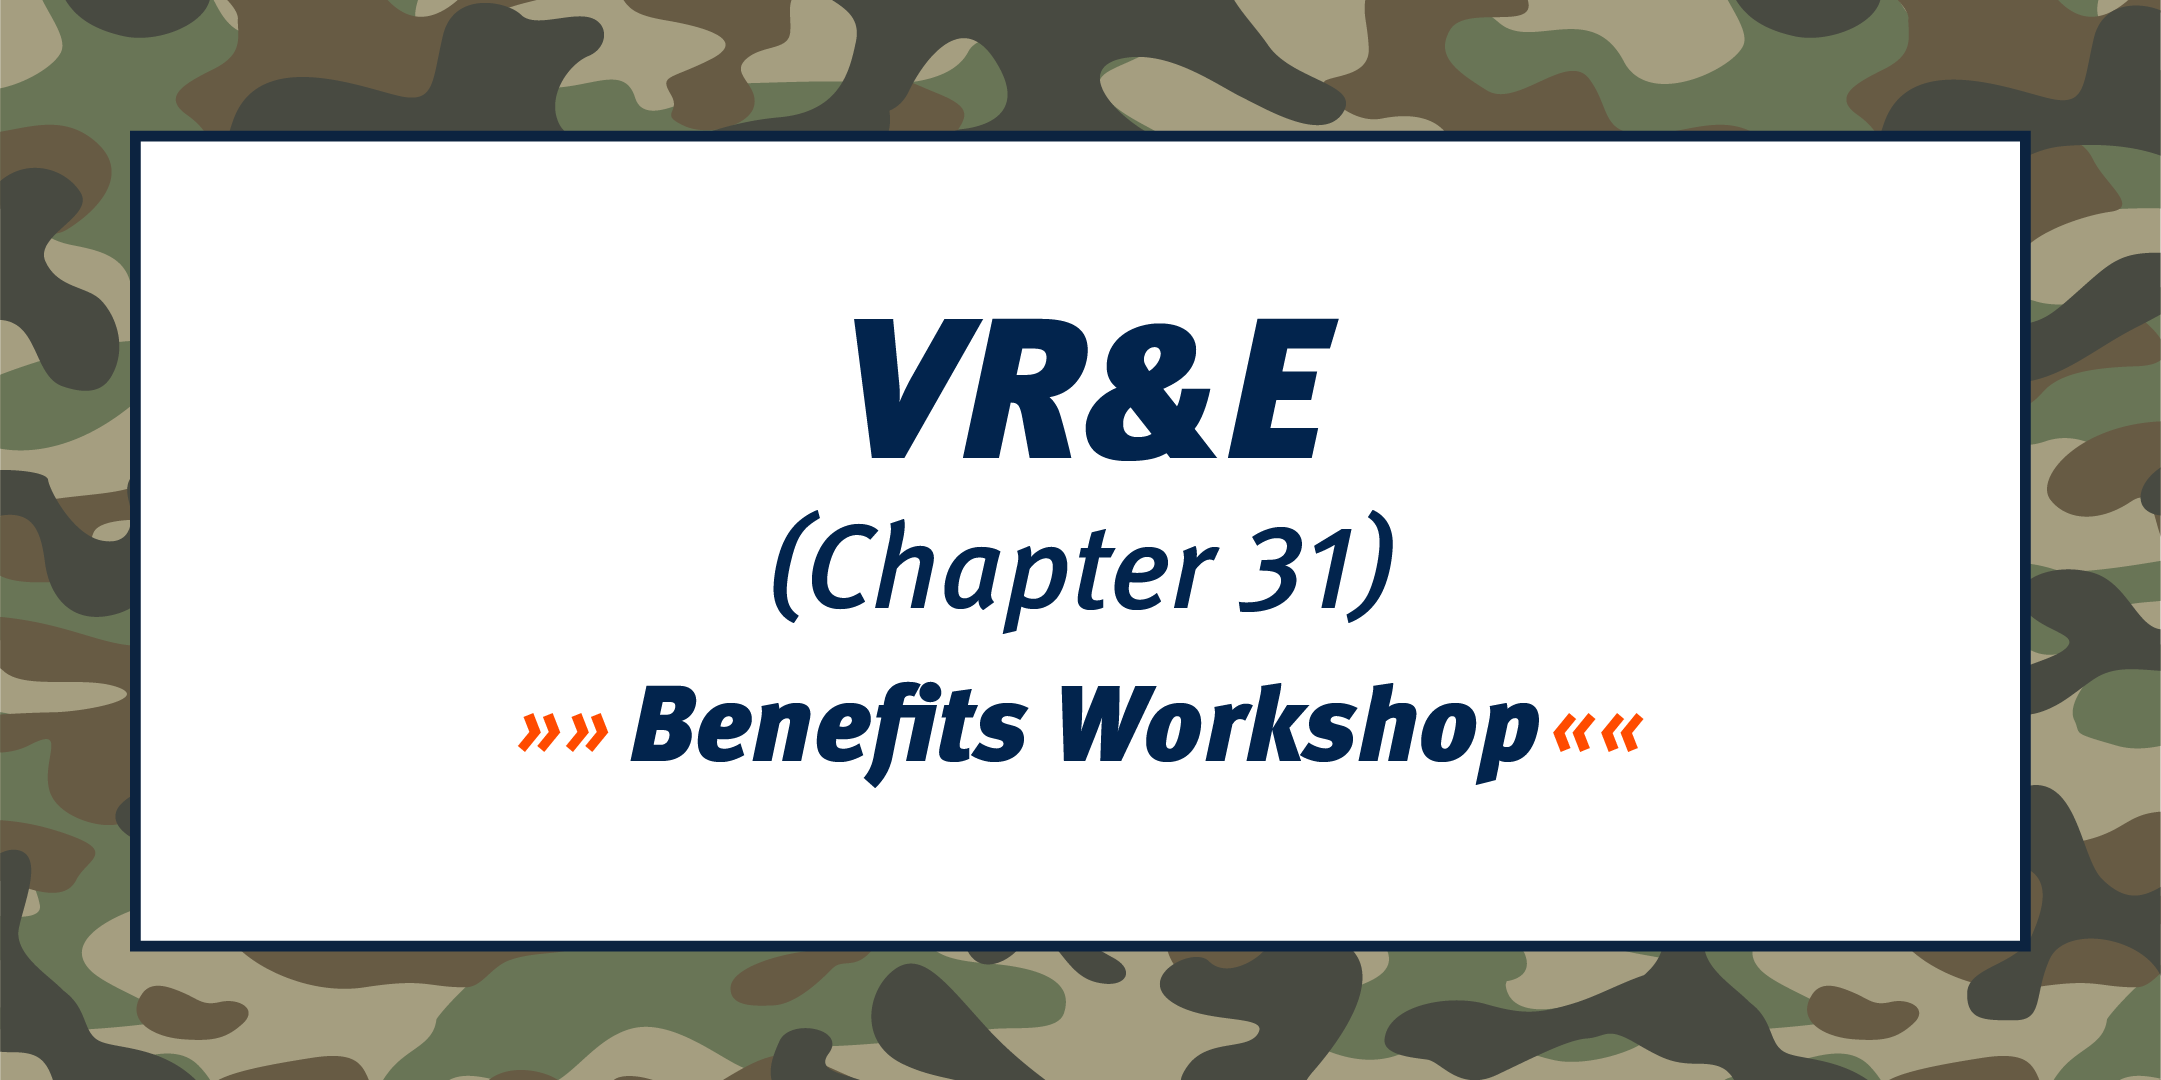 VR & E (Chapter 31) Benefits Workshop